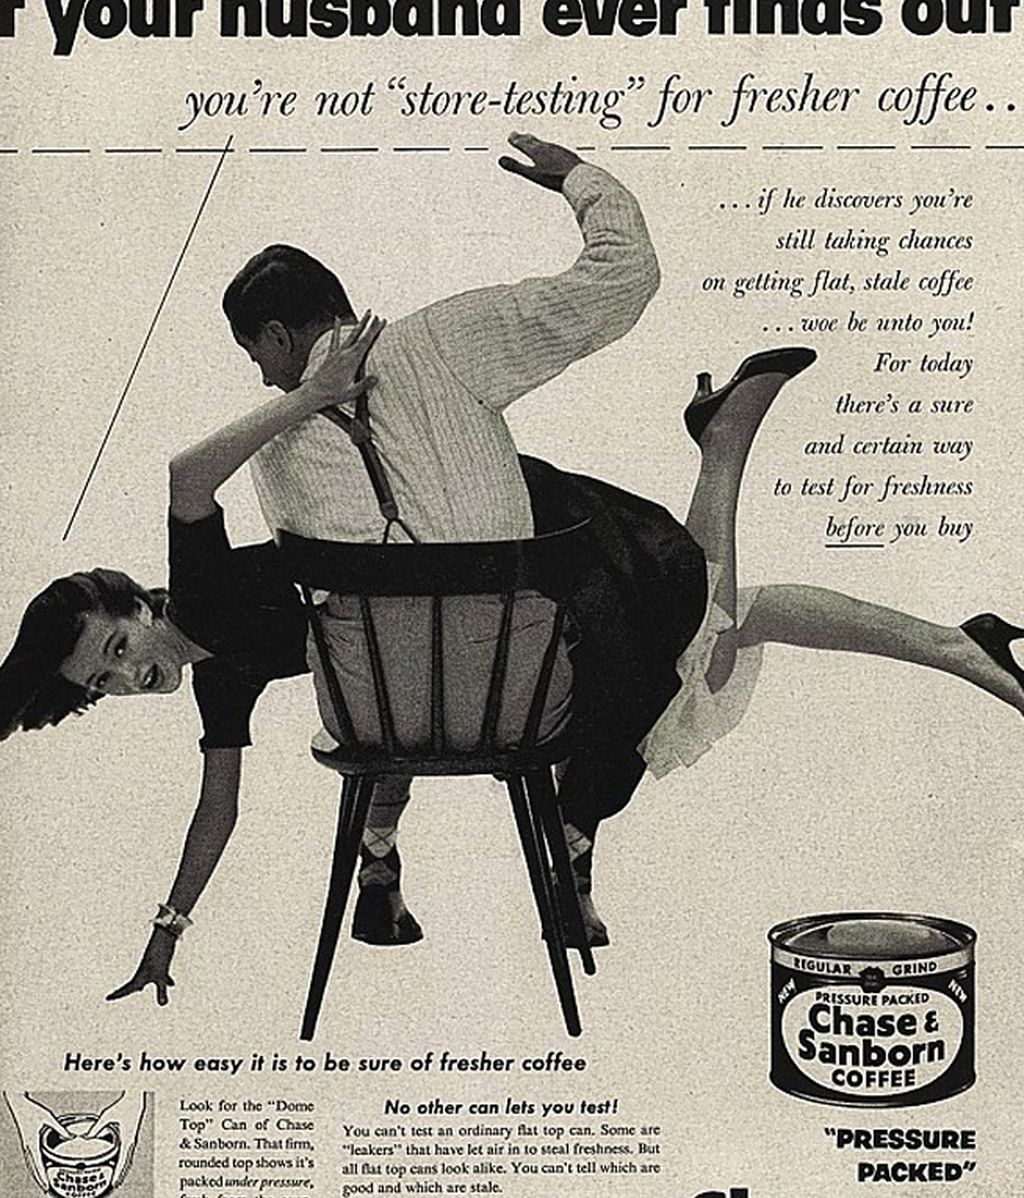 ¿Crees que la publicidad ha dejado de ser tan sexista como hace décadas?